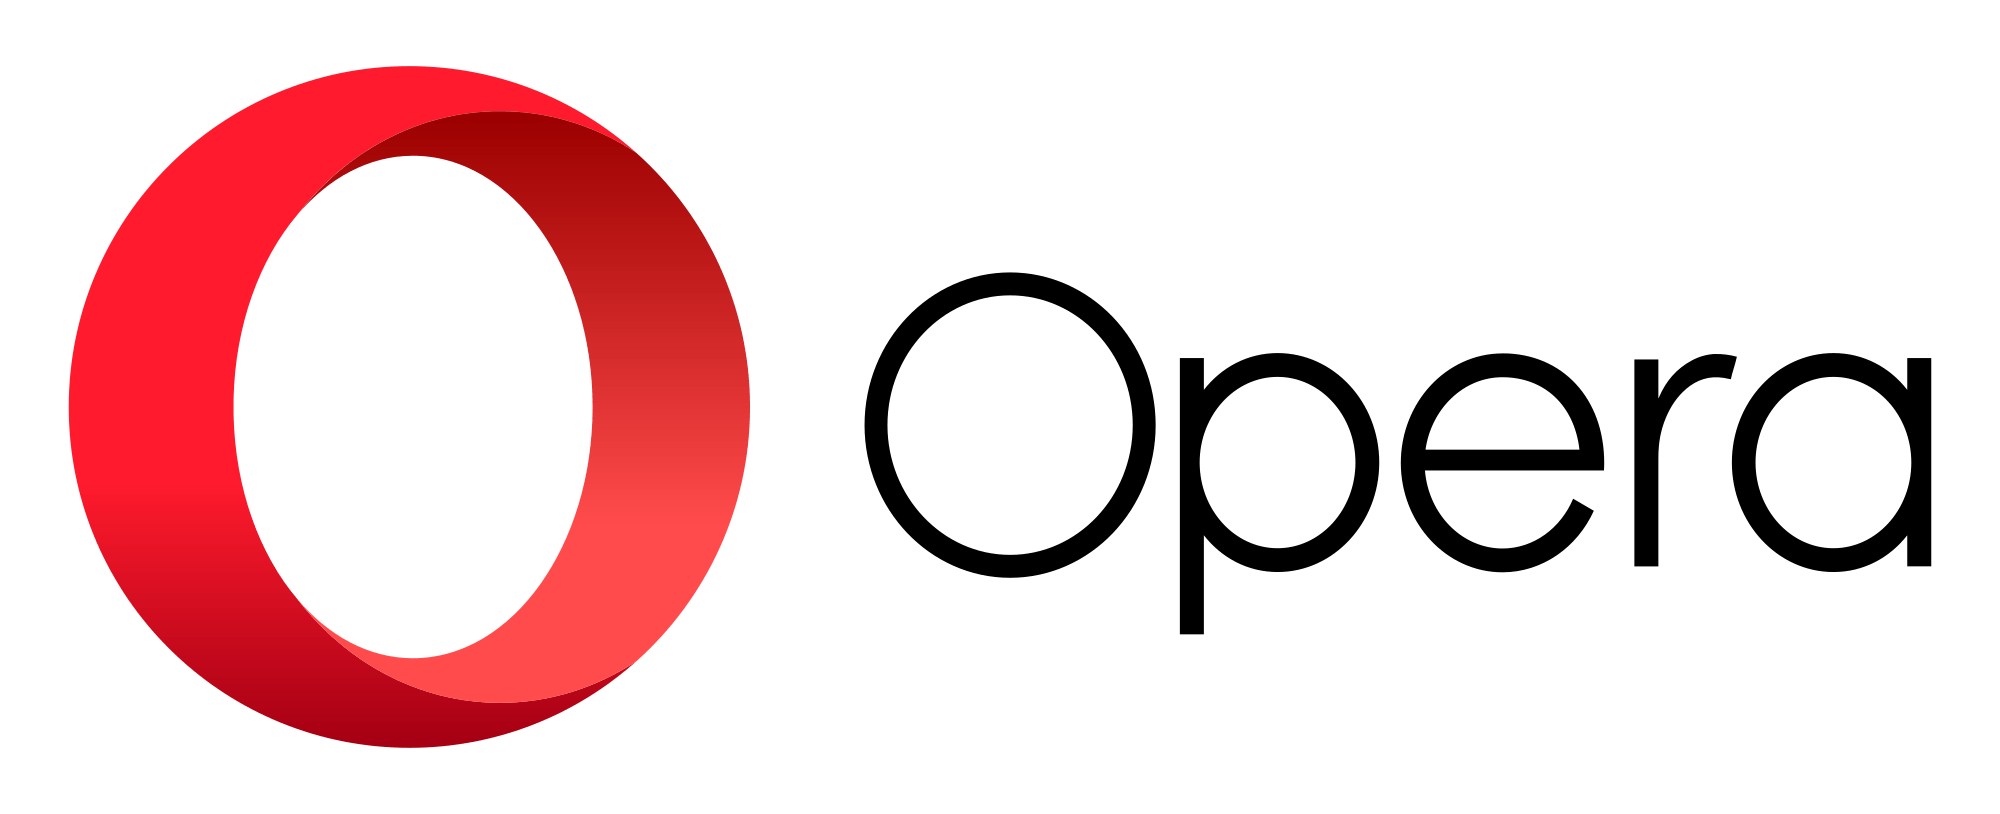 Opera Browser Logo - File:Opera 2015 logo.svg - Wikimedia Commons